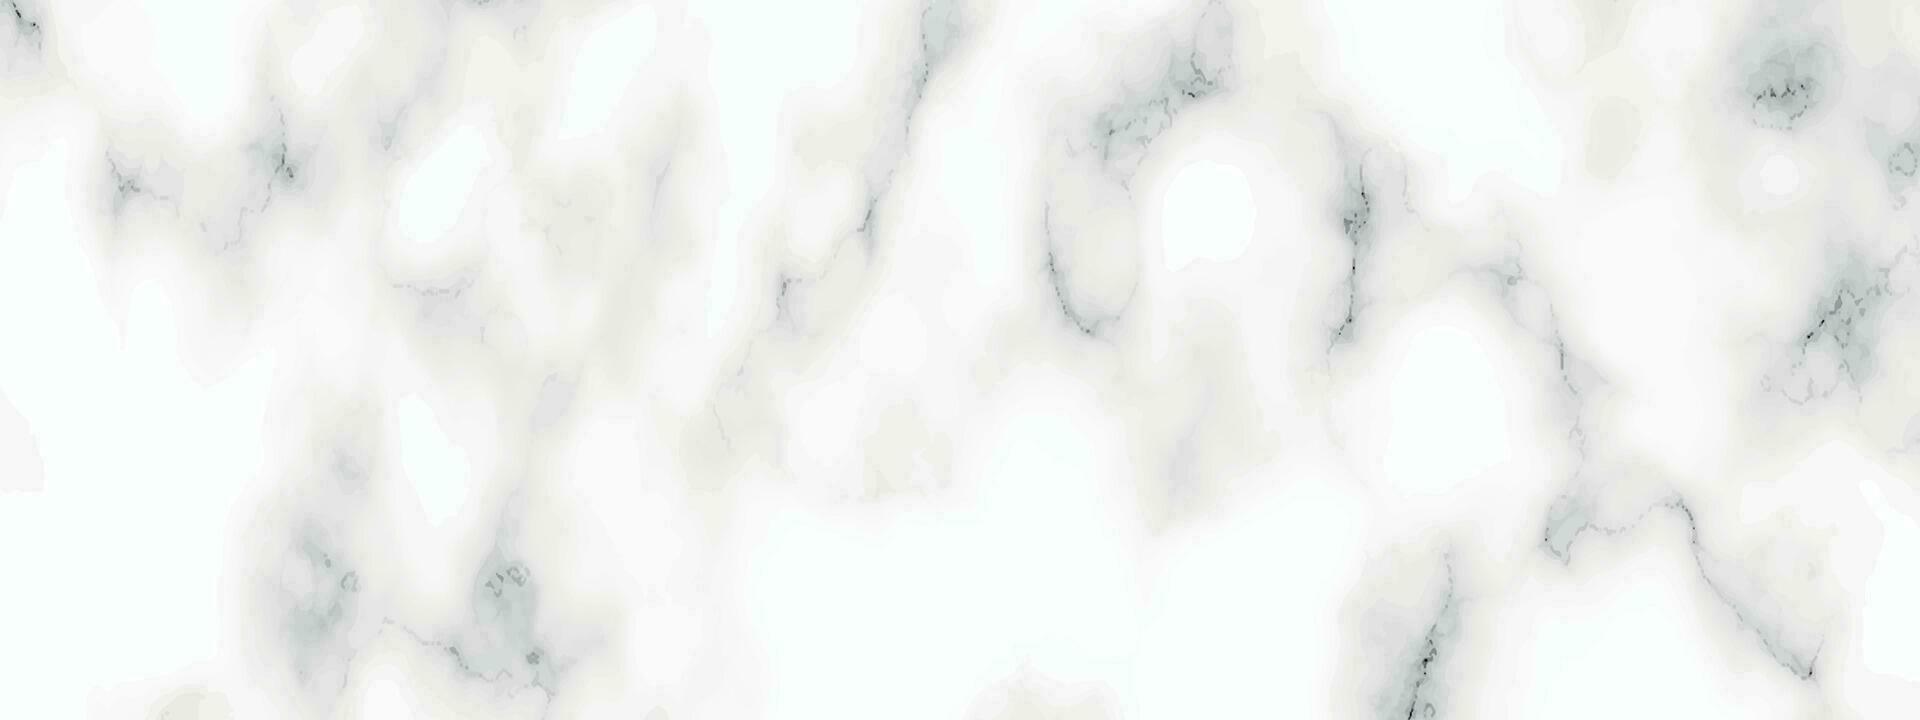 bianca panorama marmo struttura. astratto leggero elegante bianca per pavimento ceramica contatore struttura pietra lastra liscio piastrella grigio argento naturale. vettore